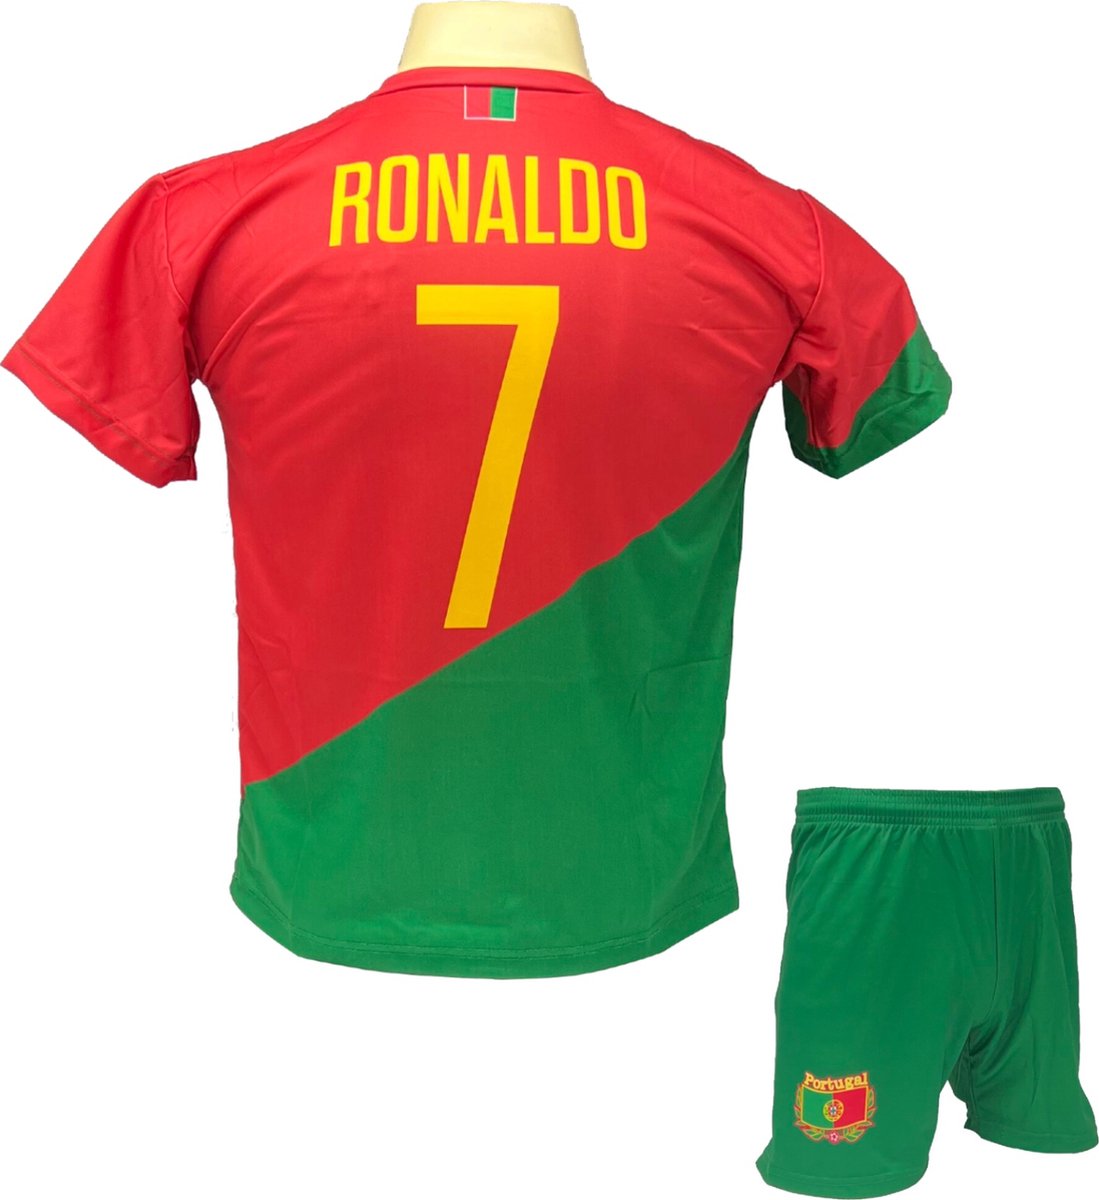 Cristiano Ronaldo CR7 Portugal Tenue - Voetbal Shirt + broekje set - EK/WK voetbaltenue - Maat 92